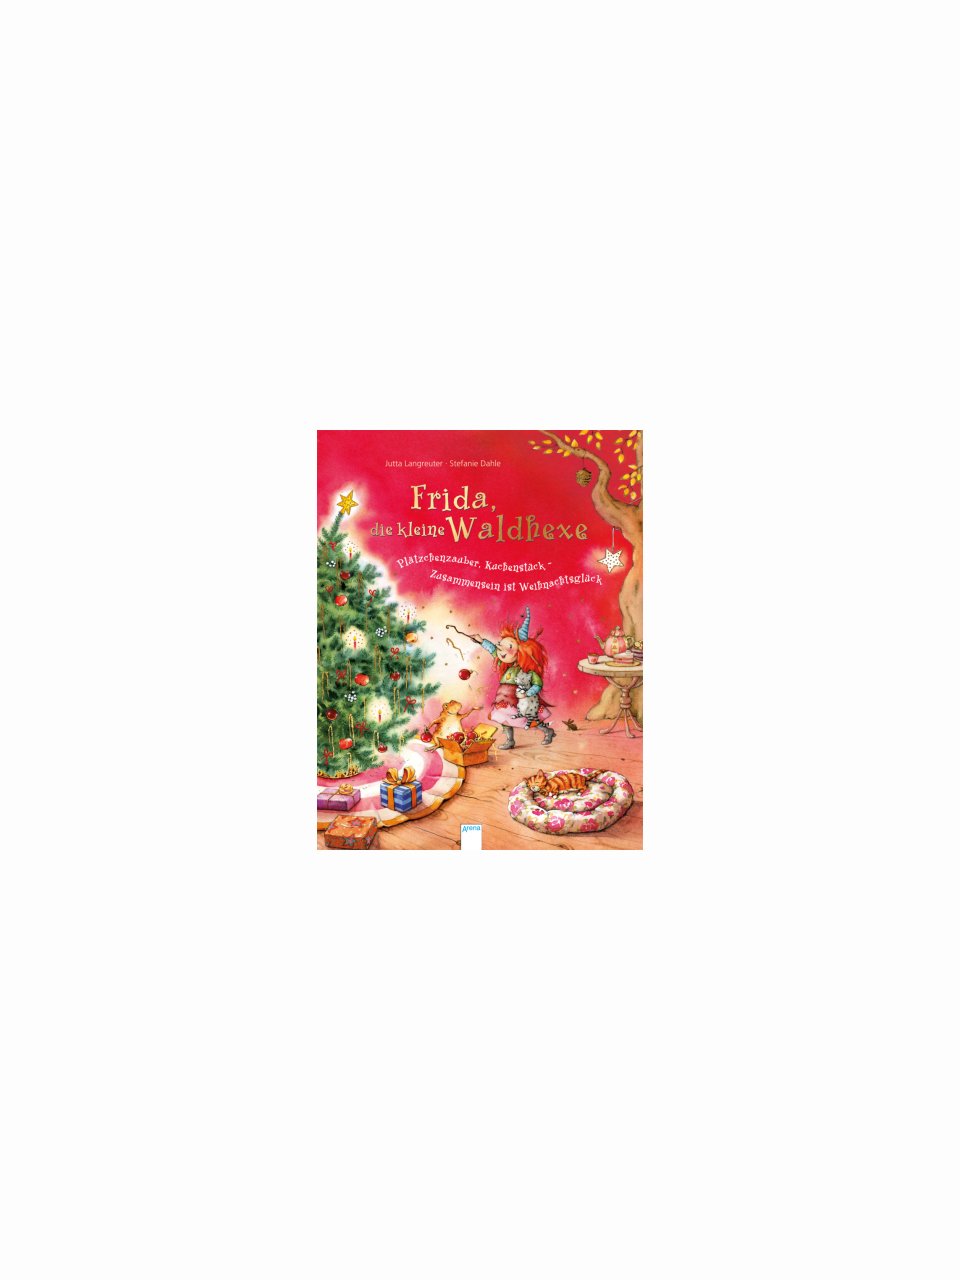 Frida, die kleine Waldhexe - Plätzchenzauber, Kuchenstück, Zusammensein ist Weihnachtsglück